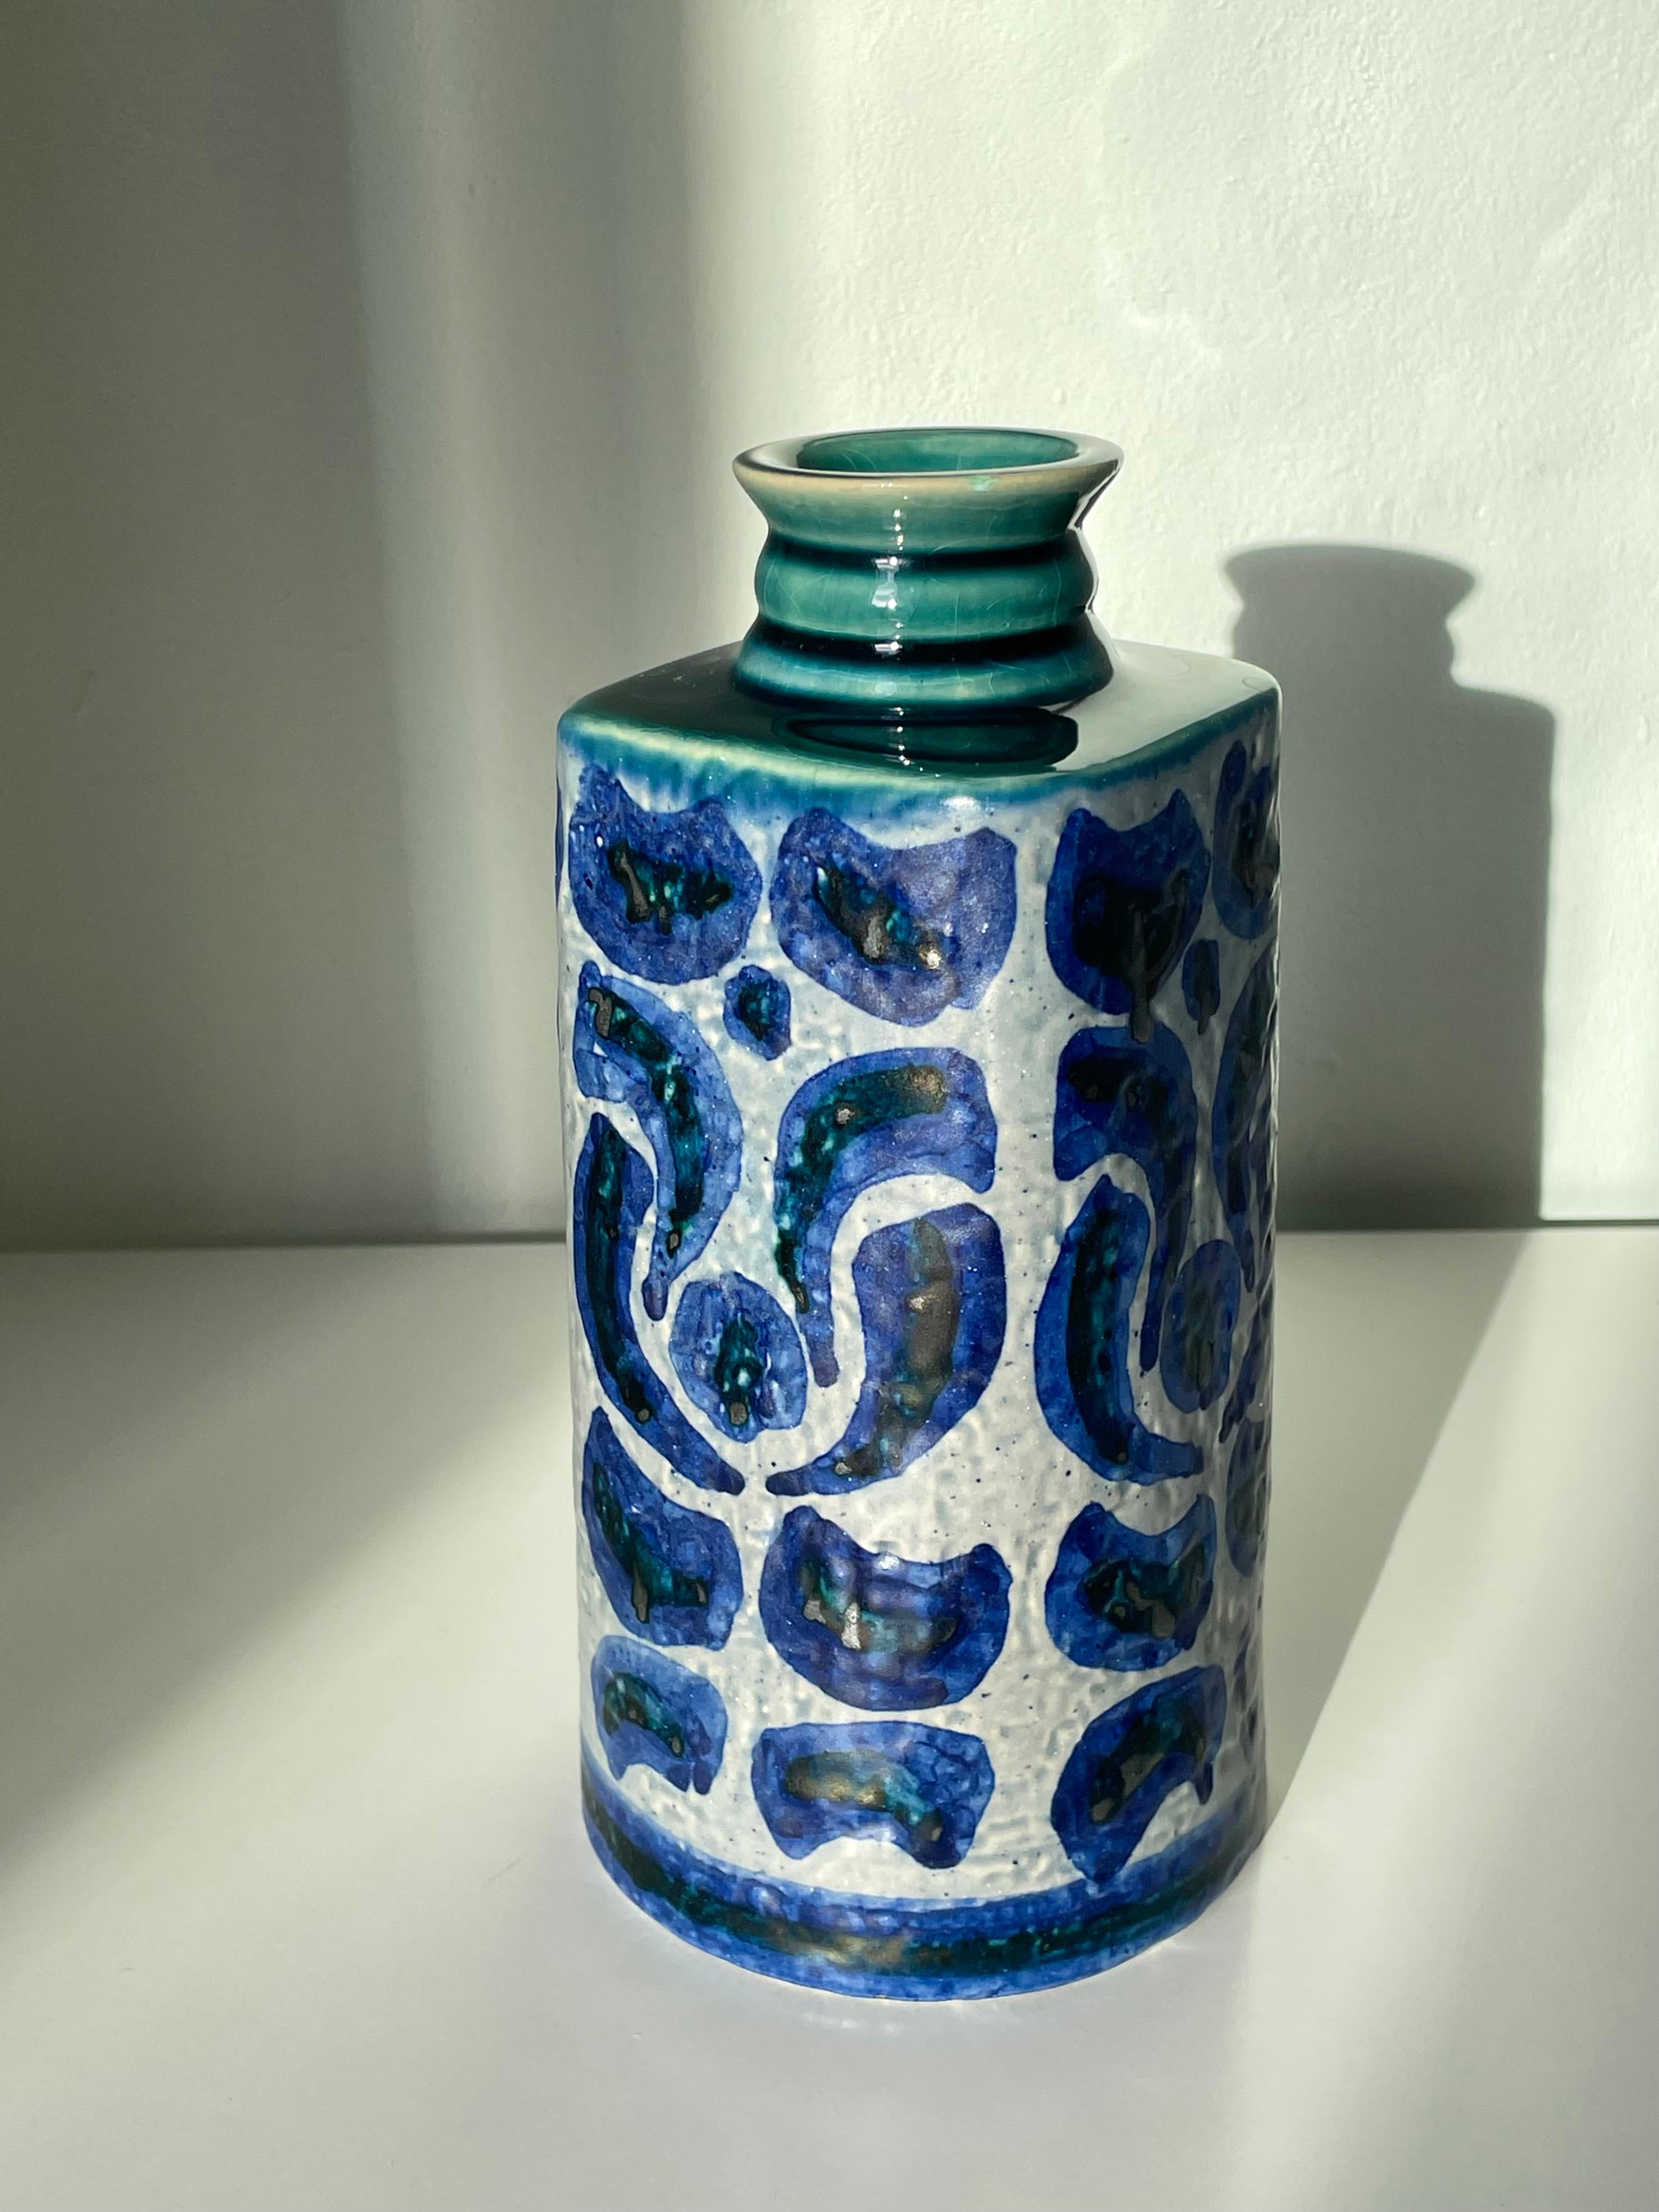 Handgedrehte schwedische Keramikvase aus der Mitte des Jahrhunderts, hergestellt von Upsala Ekeby in den 1960er Jahren. Handgemalte grafische dunkle und kobaltblaue Verzierungen auf grauem Hintergrund. Weiches, quadratisches Oberteil mit glänzender